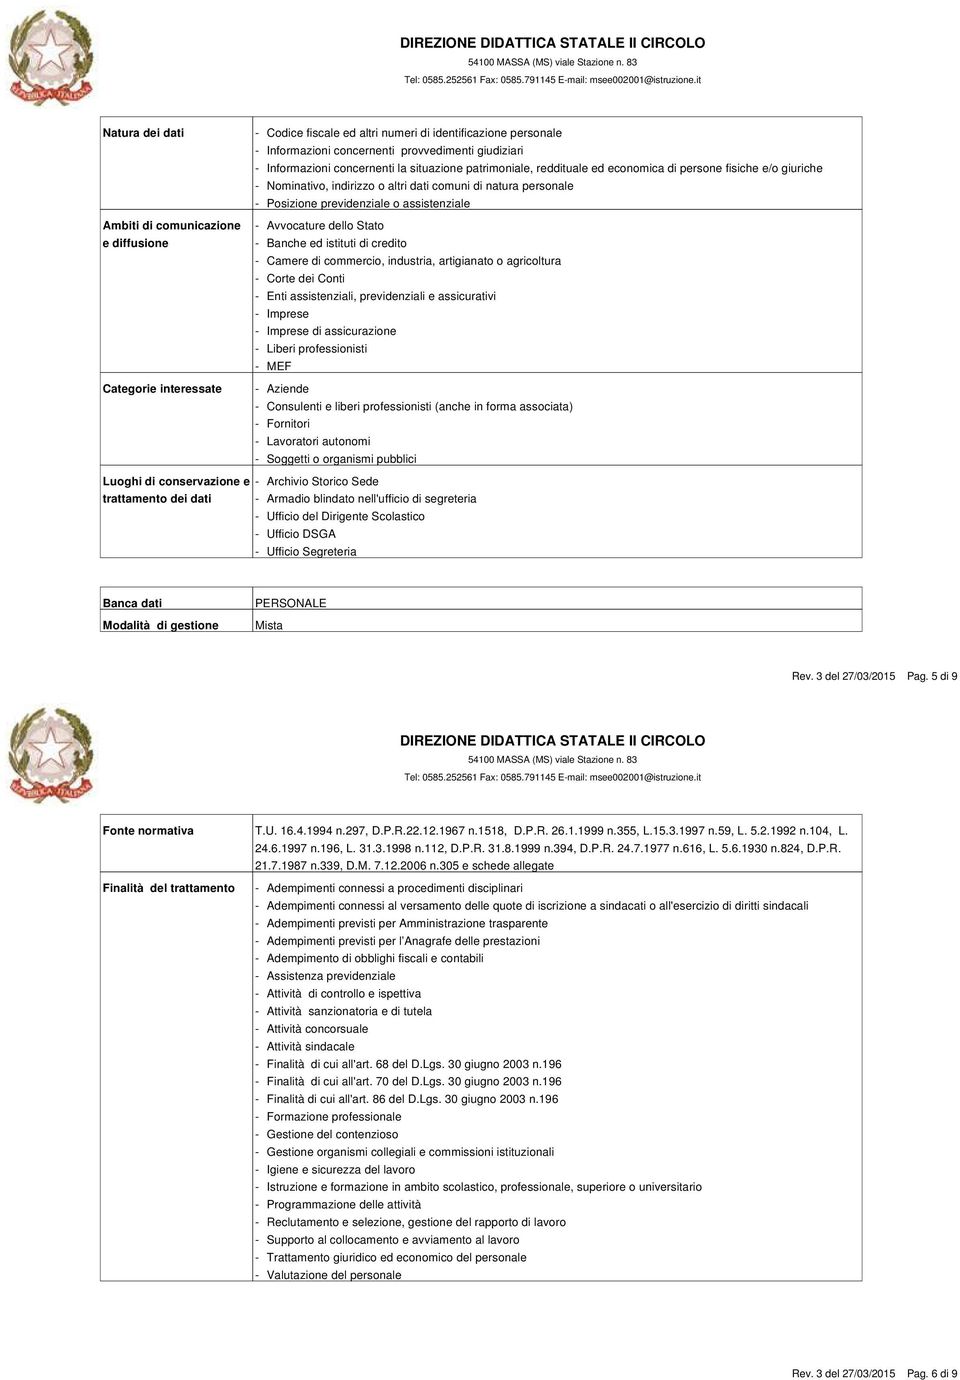 Imprese MEF Aziende Fornitori Lavoratori autonomi Luoghi di conservazione e trattamento dei dati PERSONALE Rev. 3 del 27/03/2015 Pag.